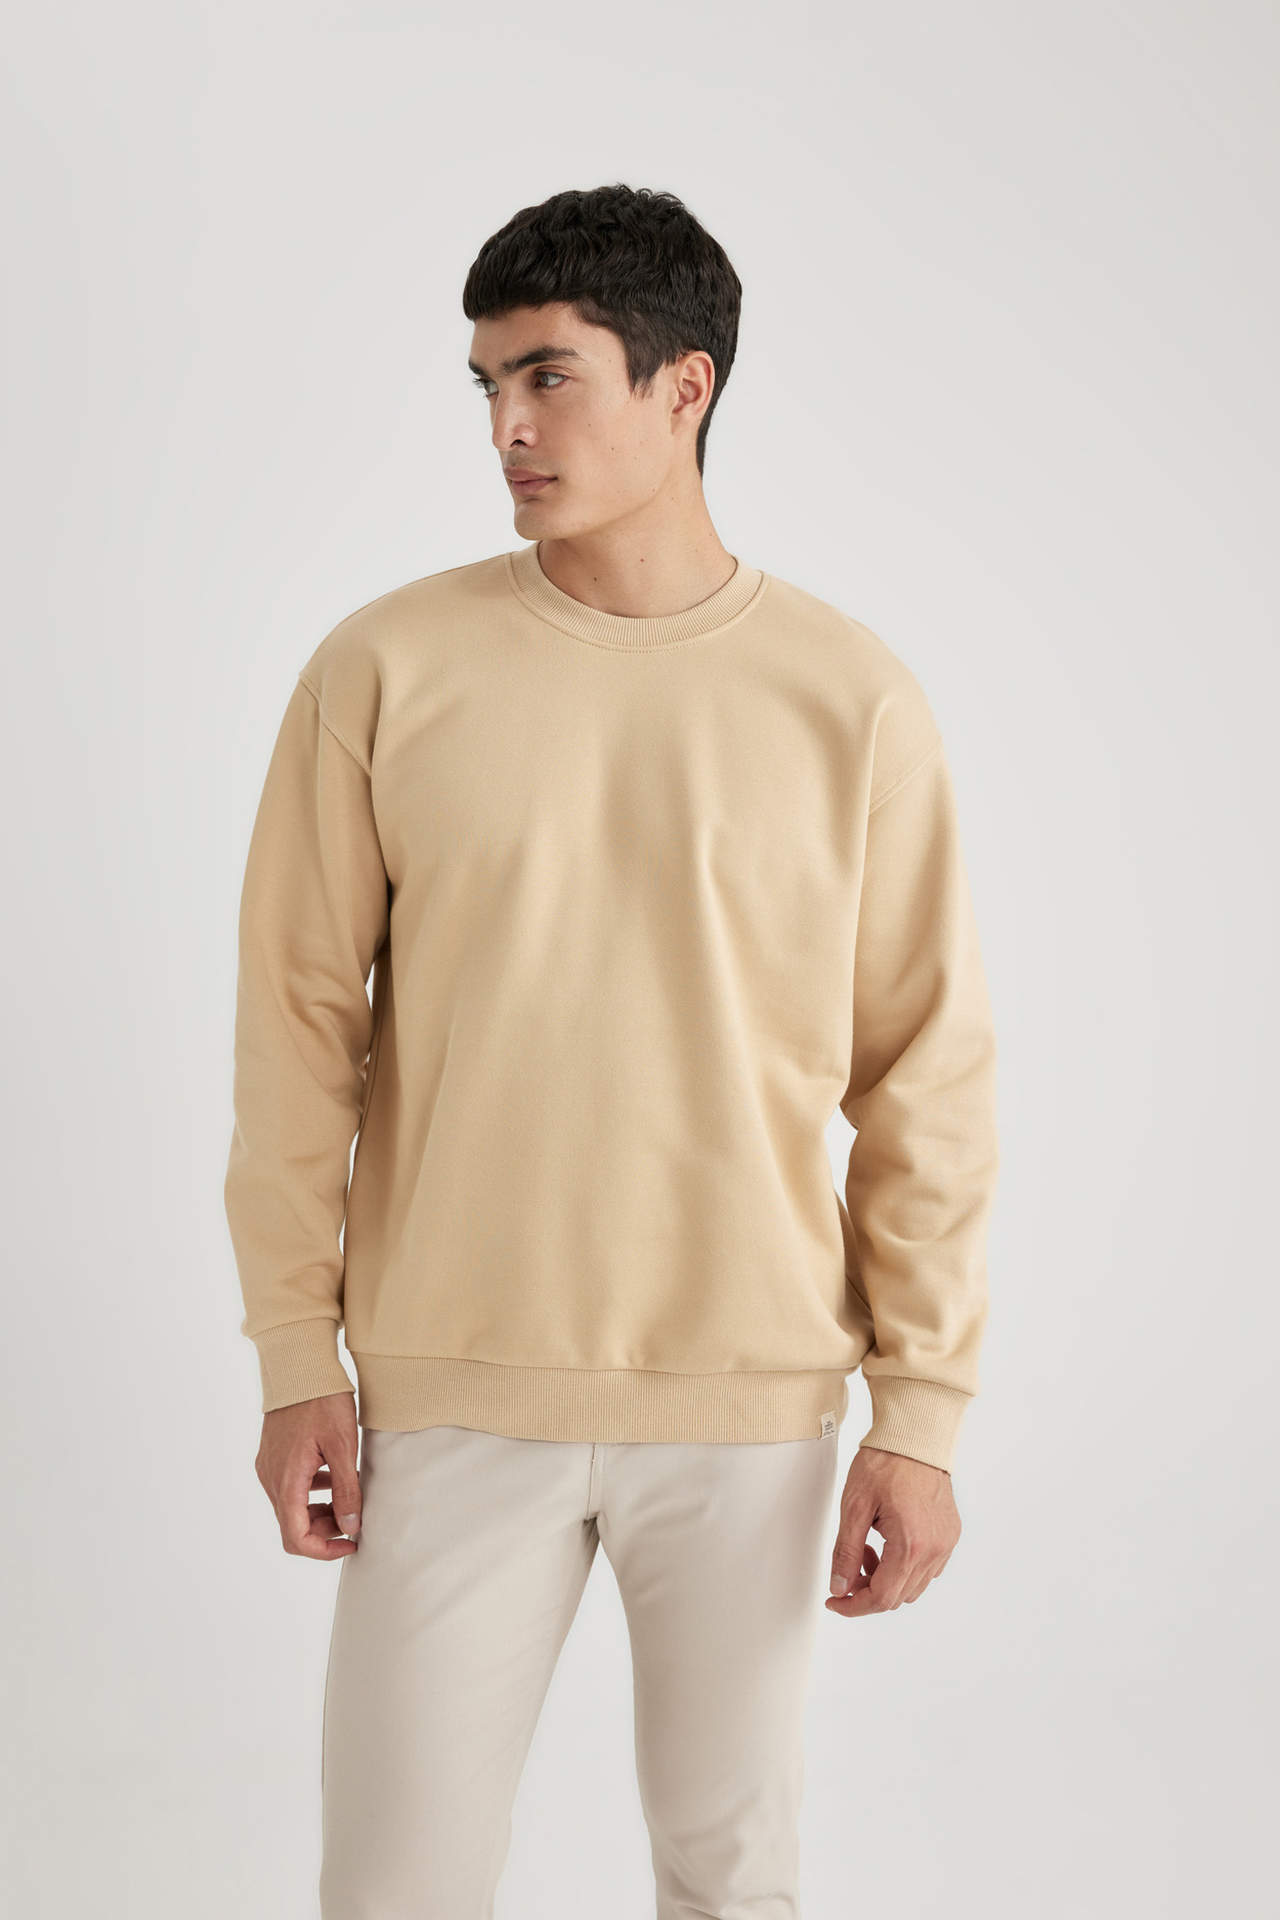 DEFACTO Oversize Fit Sweatshirt